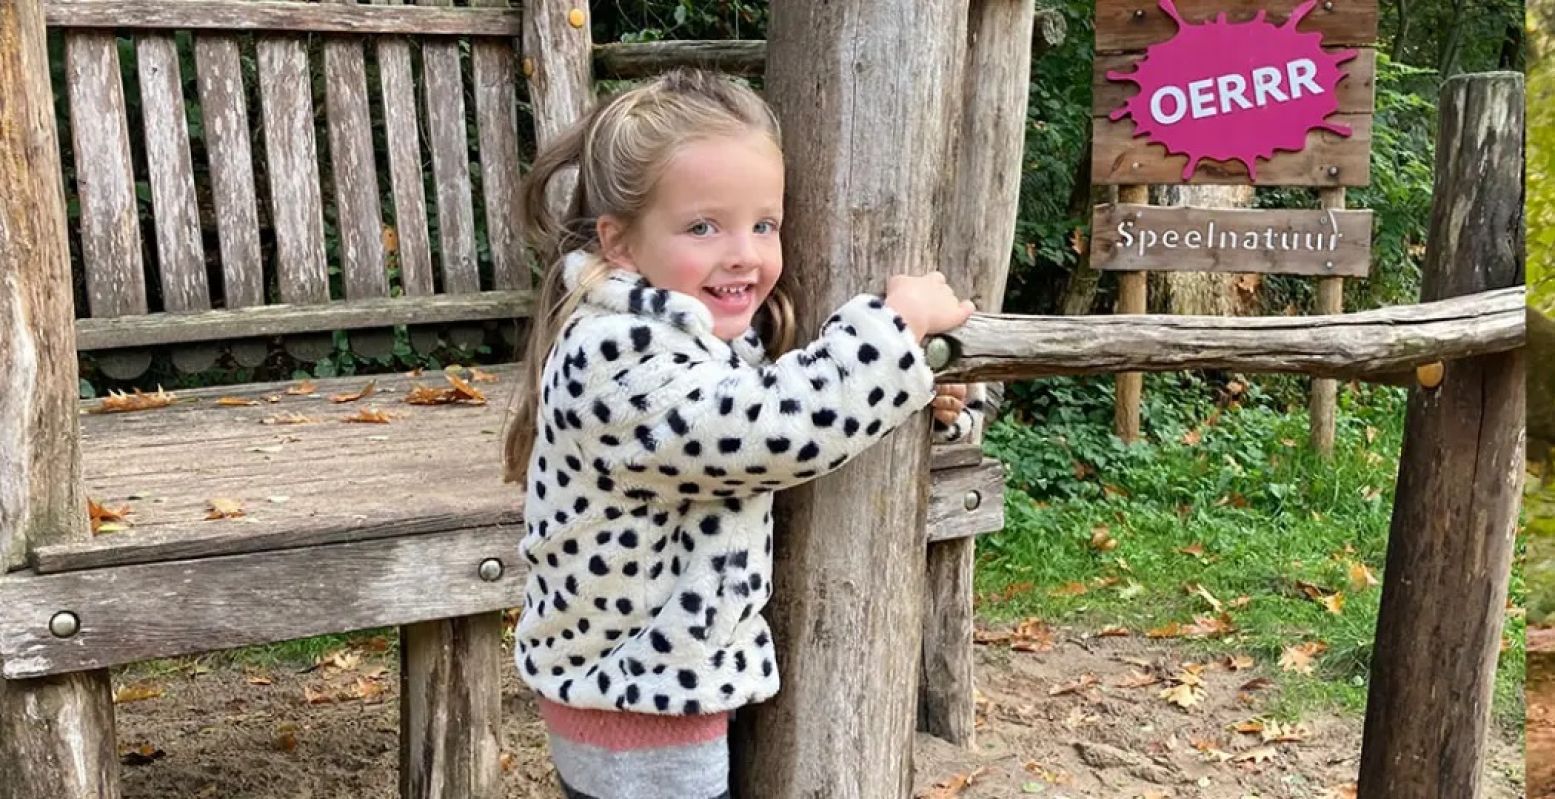 Natuurspeeltuinen zijn een heerlijke plek voor kinderen, zoals de OERRR speeltuinen van Natuurmonumenten. Foto: DagjeWeg.NL